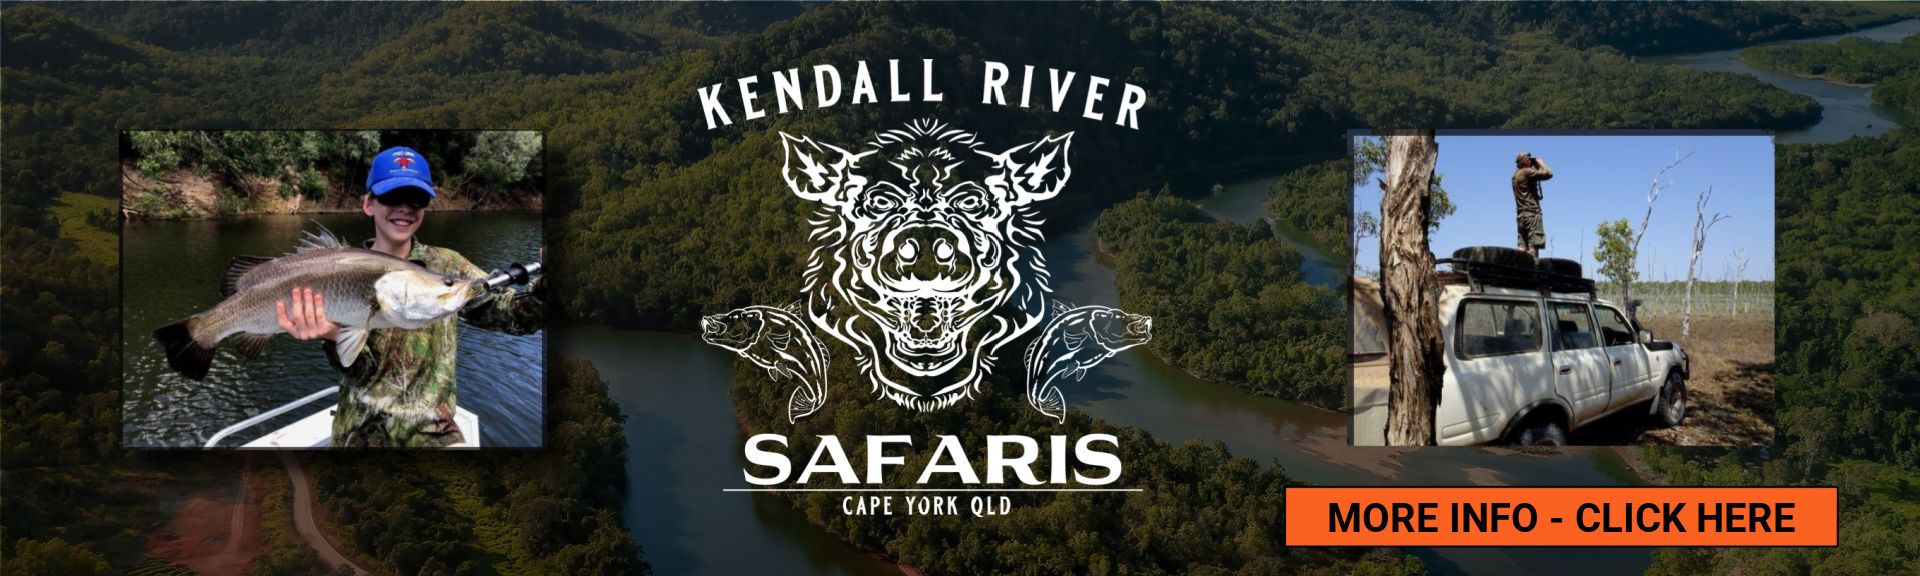 Kendall River Safari